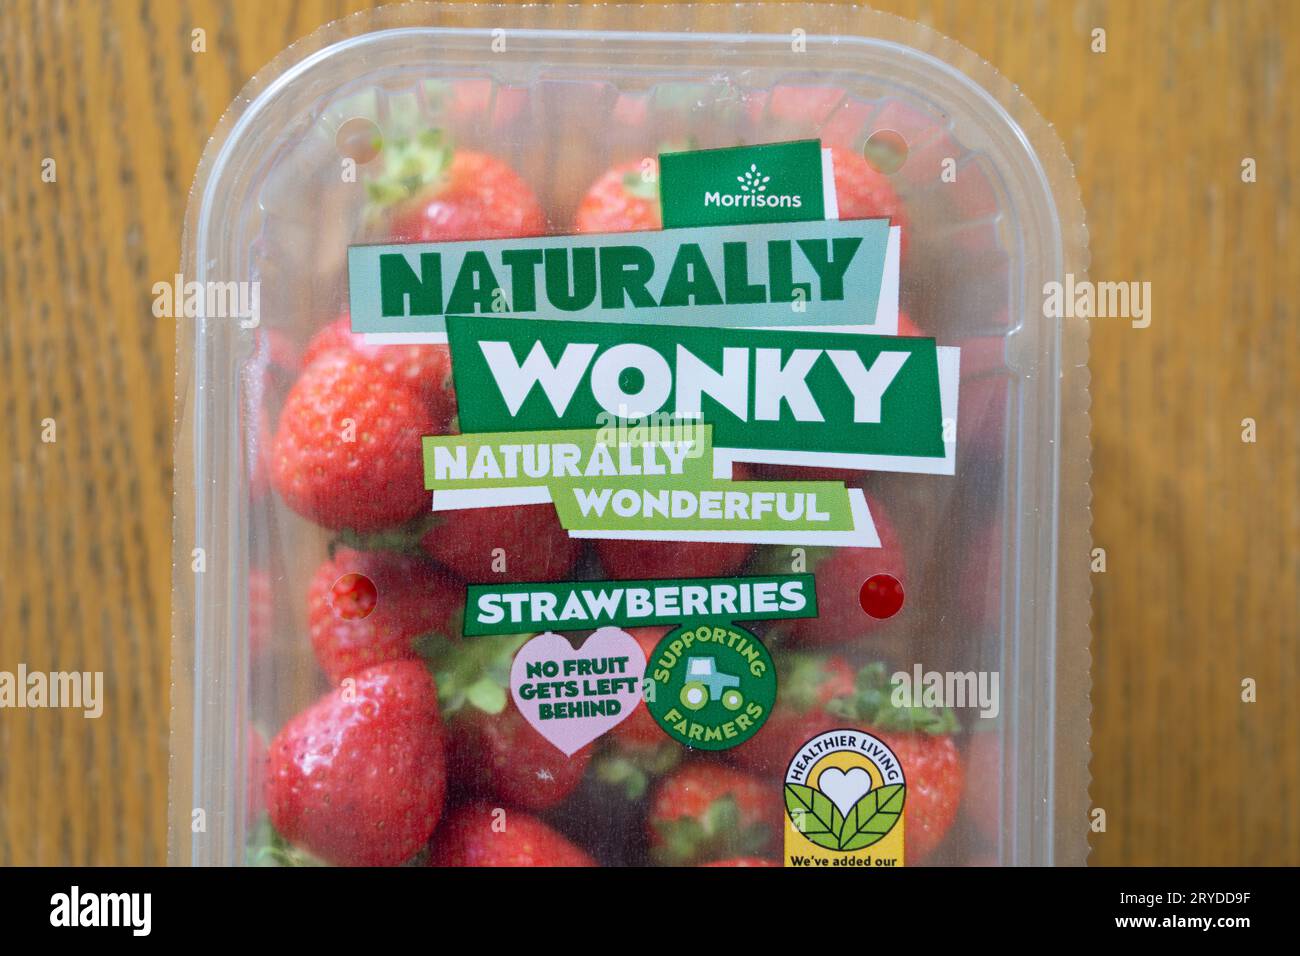 Le fragole di marca del supermercato Morrisons in confezione, etichettate come "naturalmente wonky". Concetto: Cercare di ridurre gli sprechi alimentari del Regno Unito, la frutta e le verdure stravaganti Foto Stock